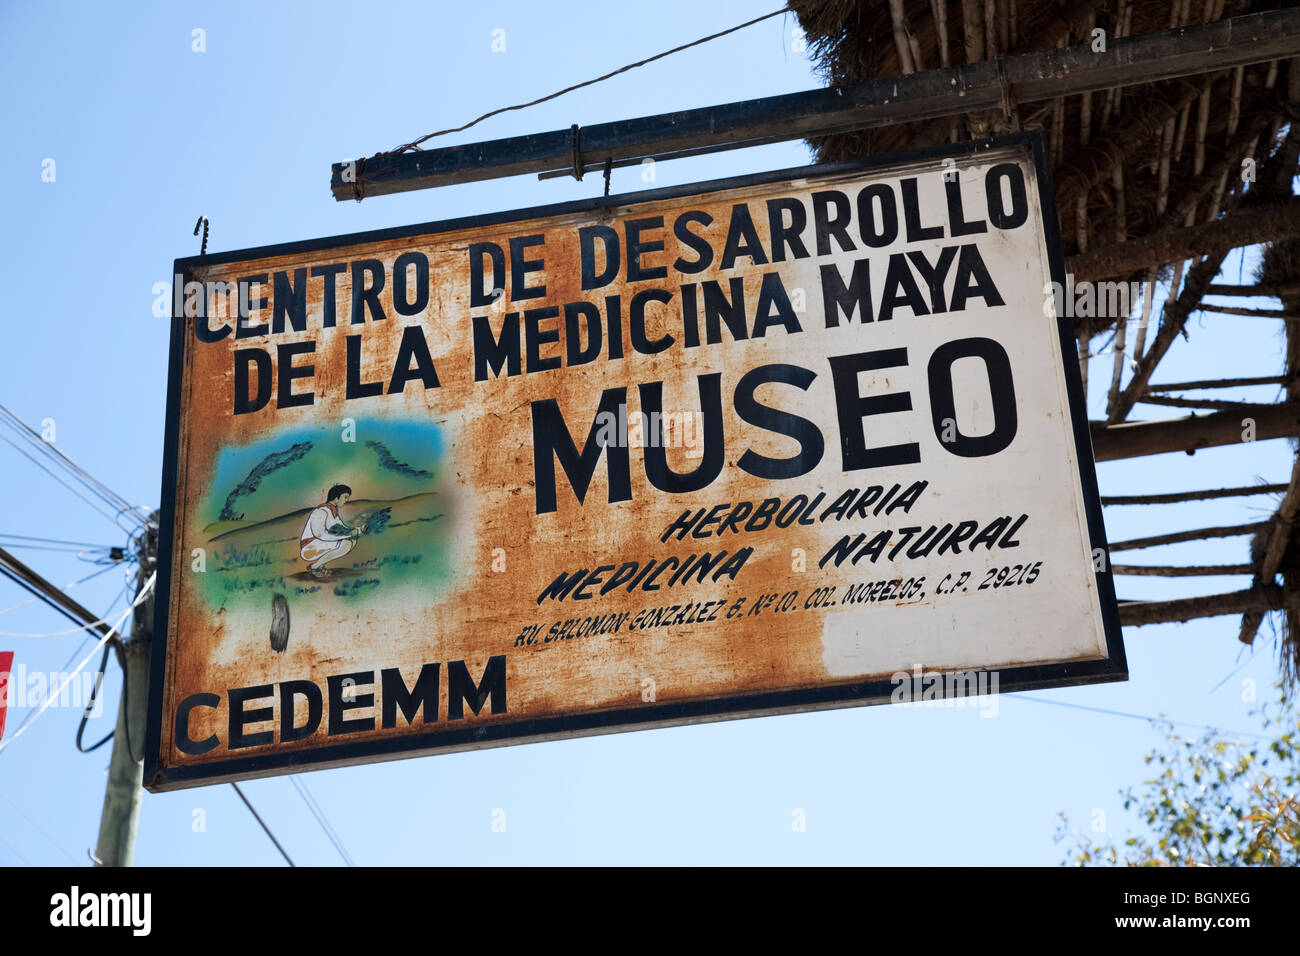 Museo Centro de desarrollo de la medicina maya. San Cristóbal de las Casas, Chiapas Mexico. Stock Photo